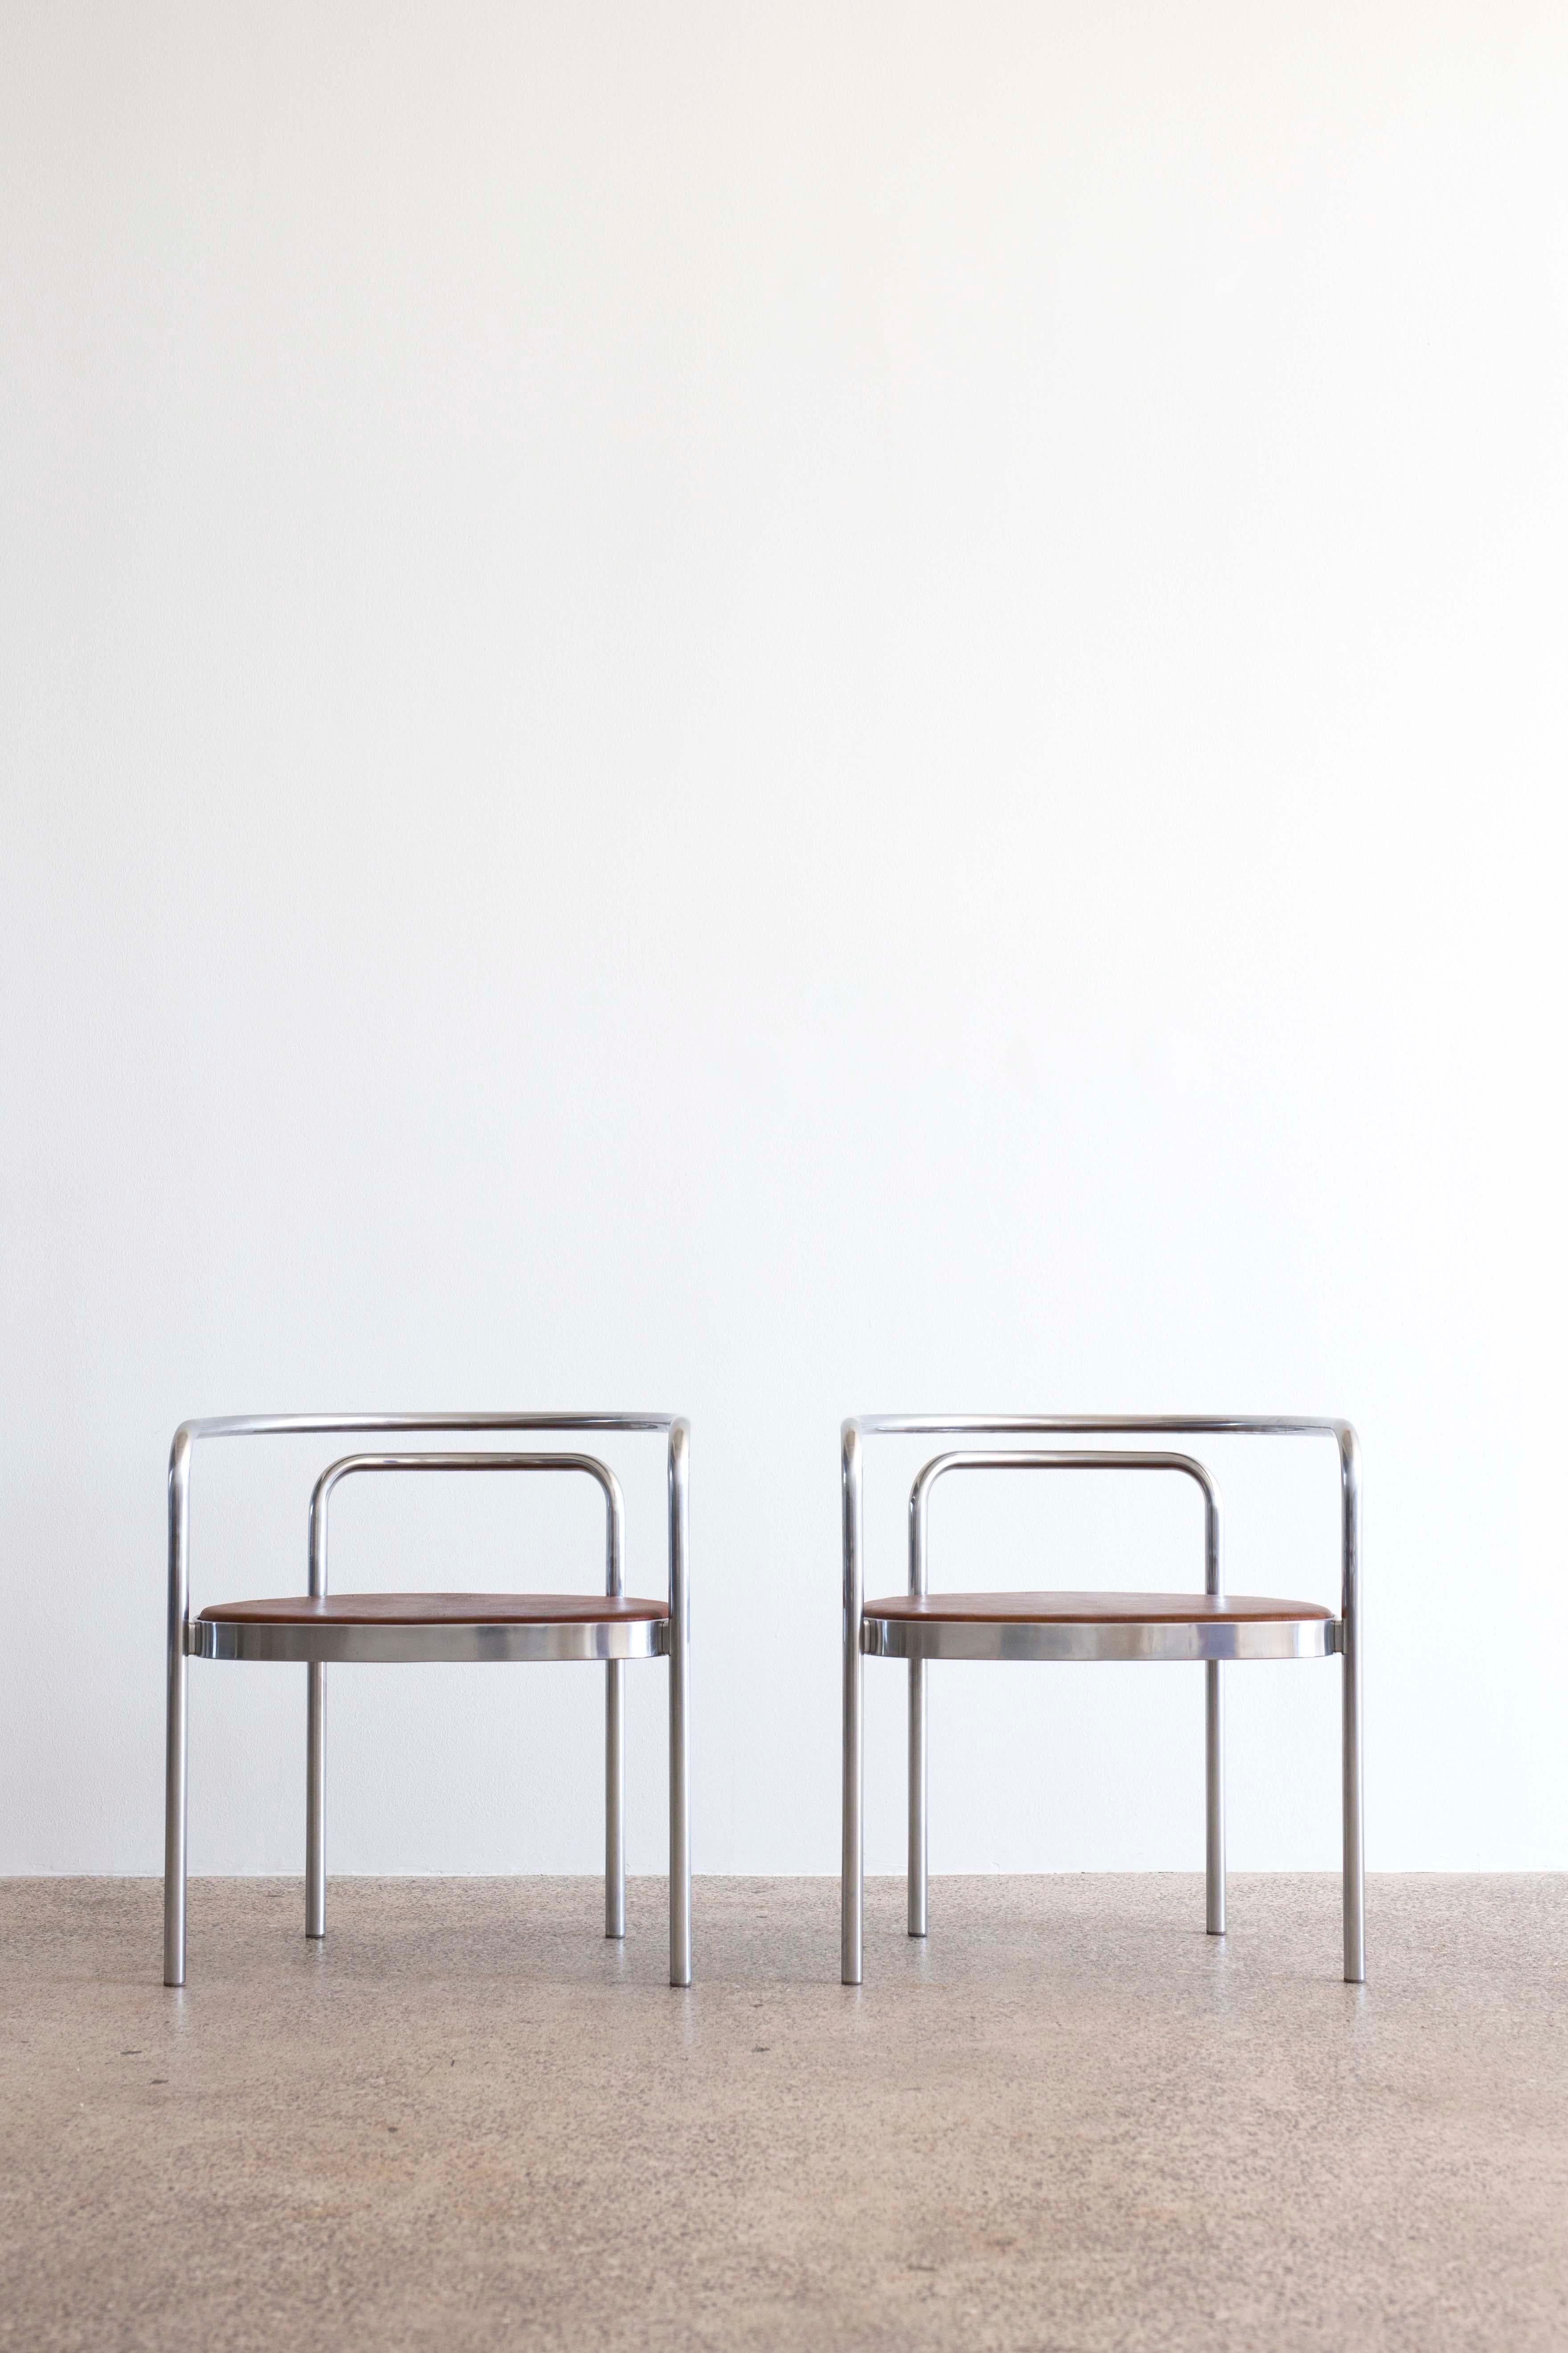 Ein Paar PK-12-Stühle von Poul Kjaerholm für E. Kold Christensen. 

Gestell aus verchromtem Stahl und Sitz mit braunem nigerianischem Leder gepolstert. 

Entworfen 1964, hergestellt bei E. Kold Christensen, Dänemark, mit